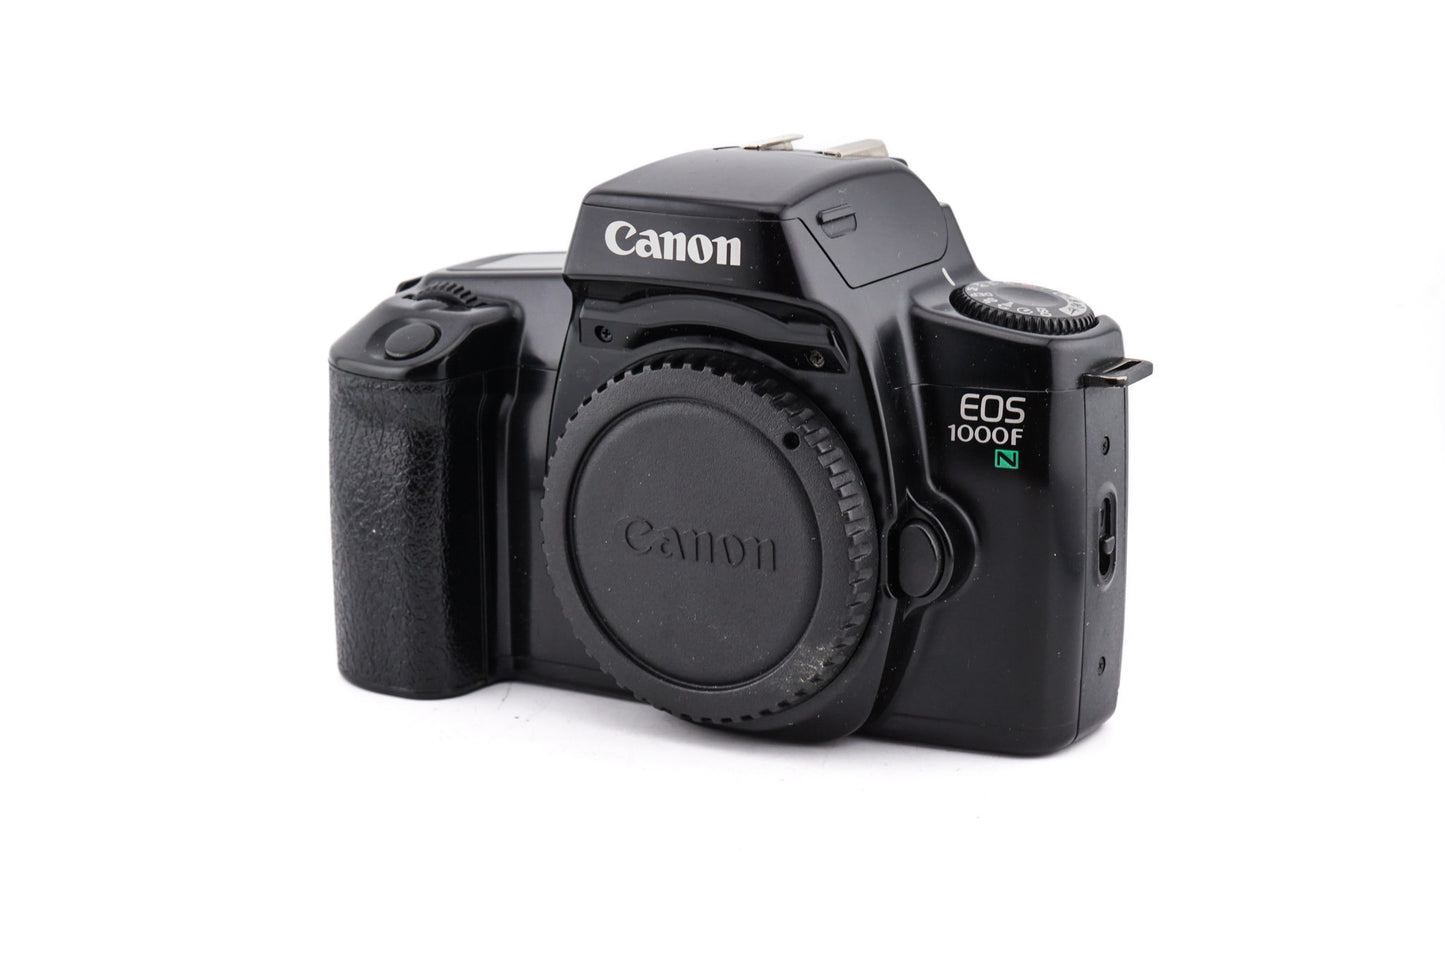 Canon EOS 1000FN - Camera